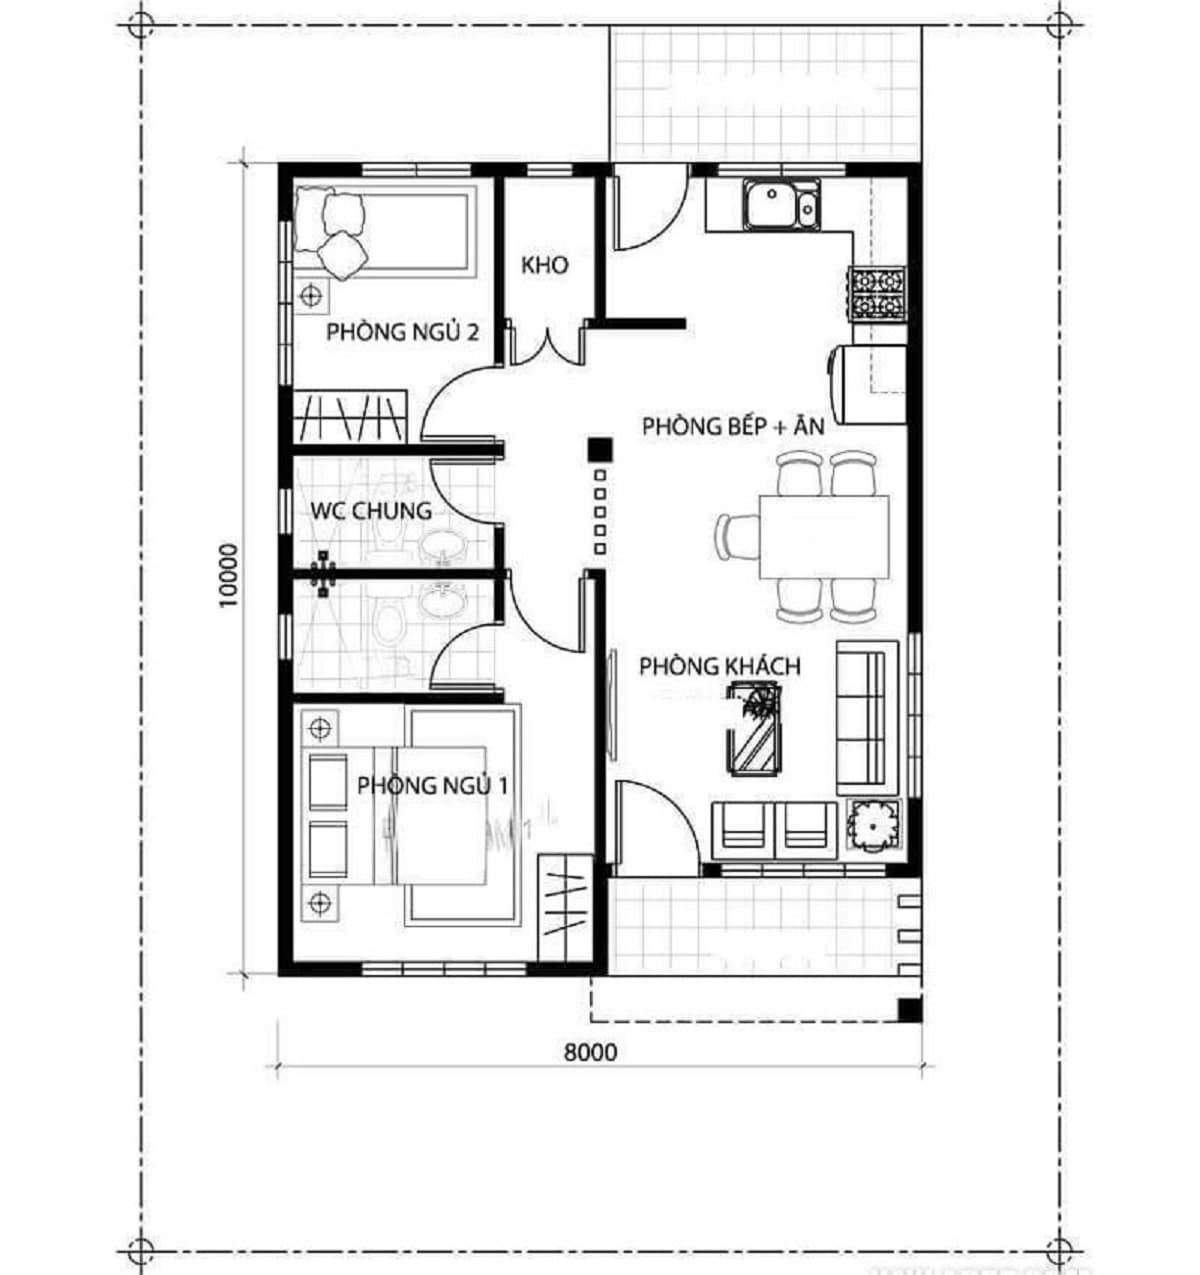 Bản vẽ thiết kế nhà 1 tầng 2 phòng ngủ đơn giản nhất